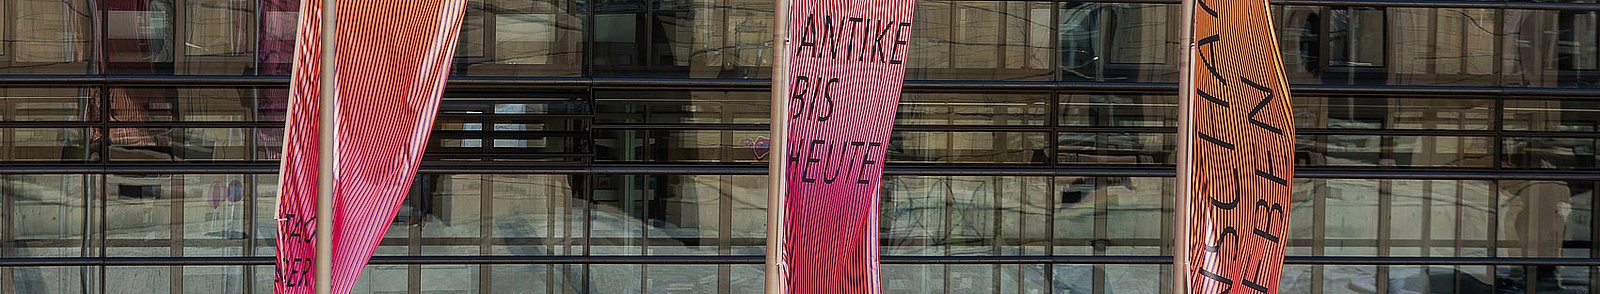 Gehisste Fahnen vor der Fassade der Bayerischen Akademie der Wissenschaften